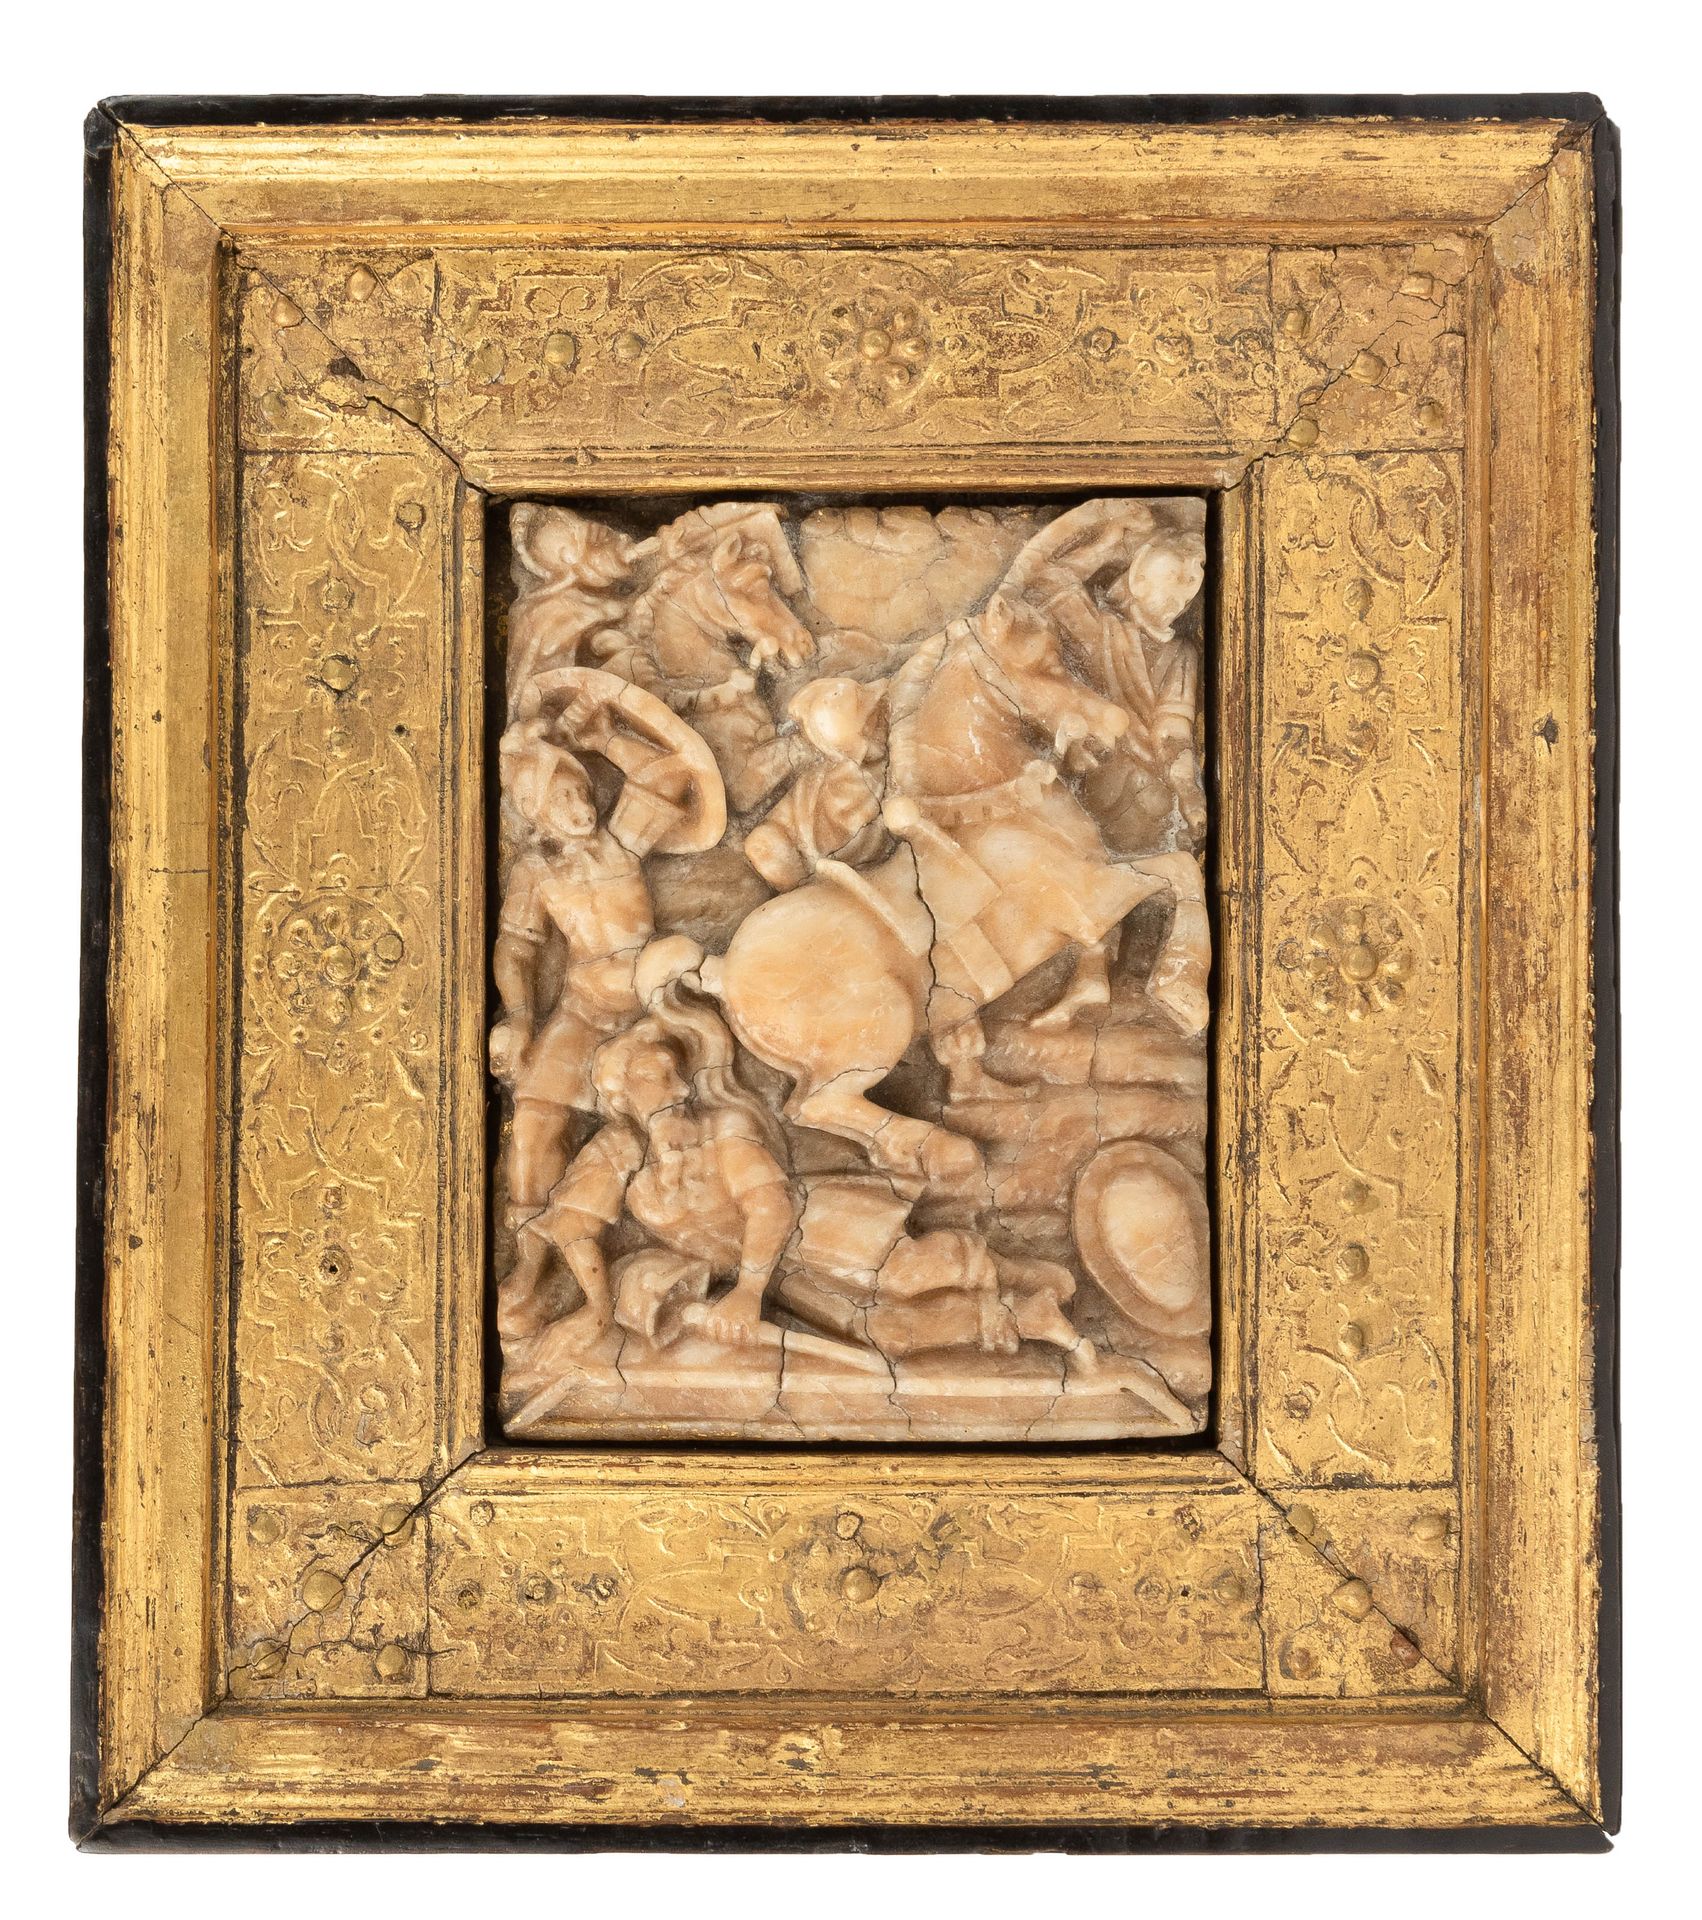 Relief. Malines. Deuxième moitié du 16ème siècle. 救济。梅赫伦。16世纪下半叶。

描绘了圣保罗的皈依。

阿&hellip;